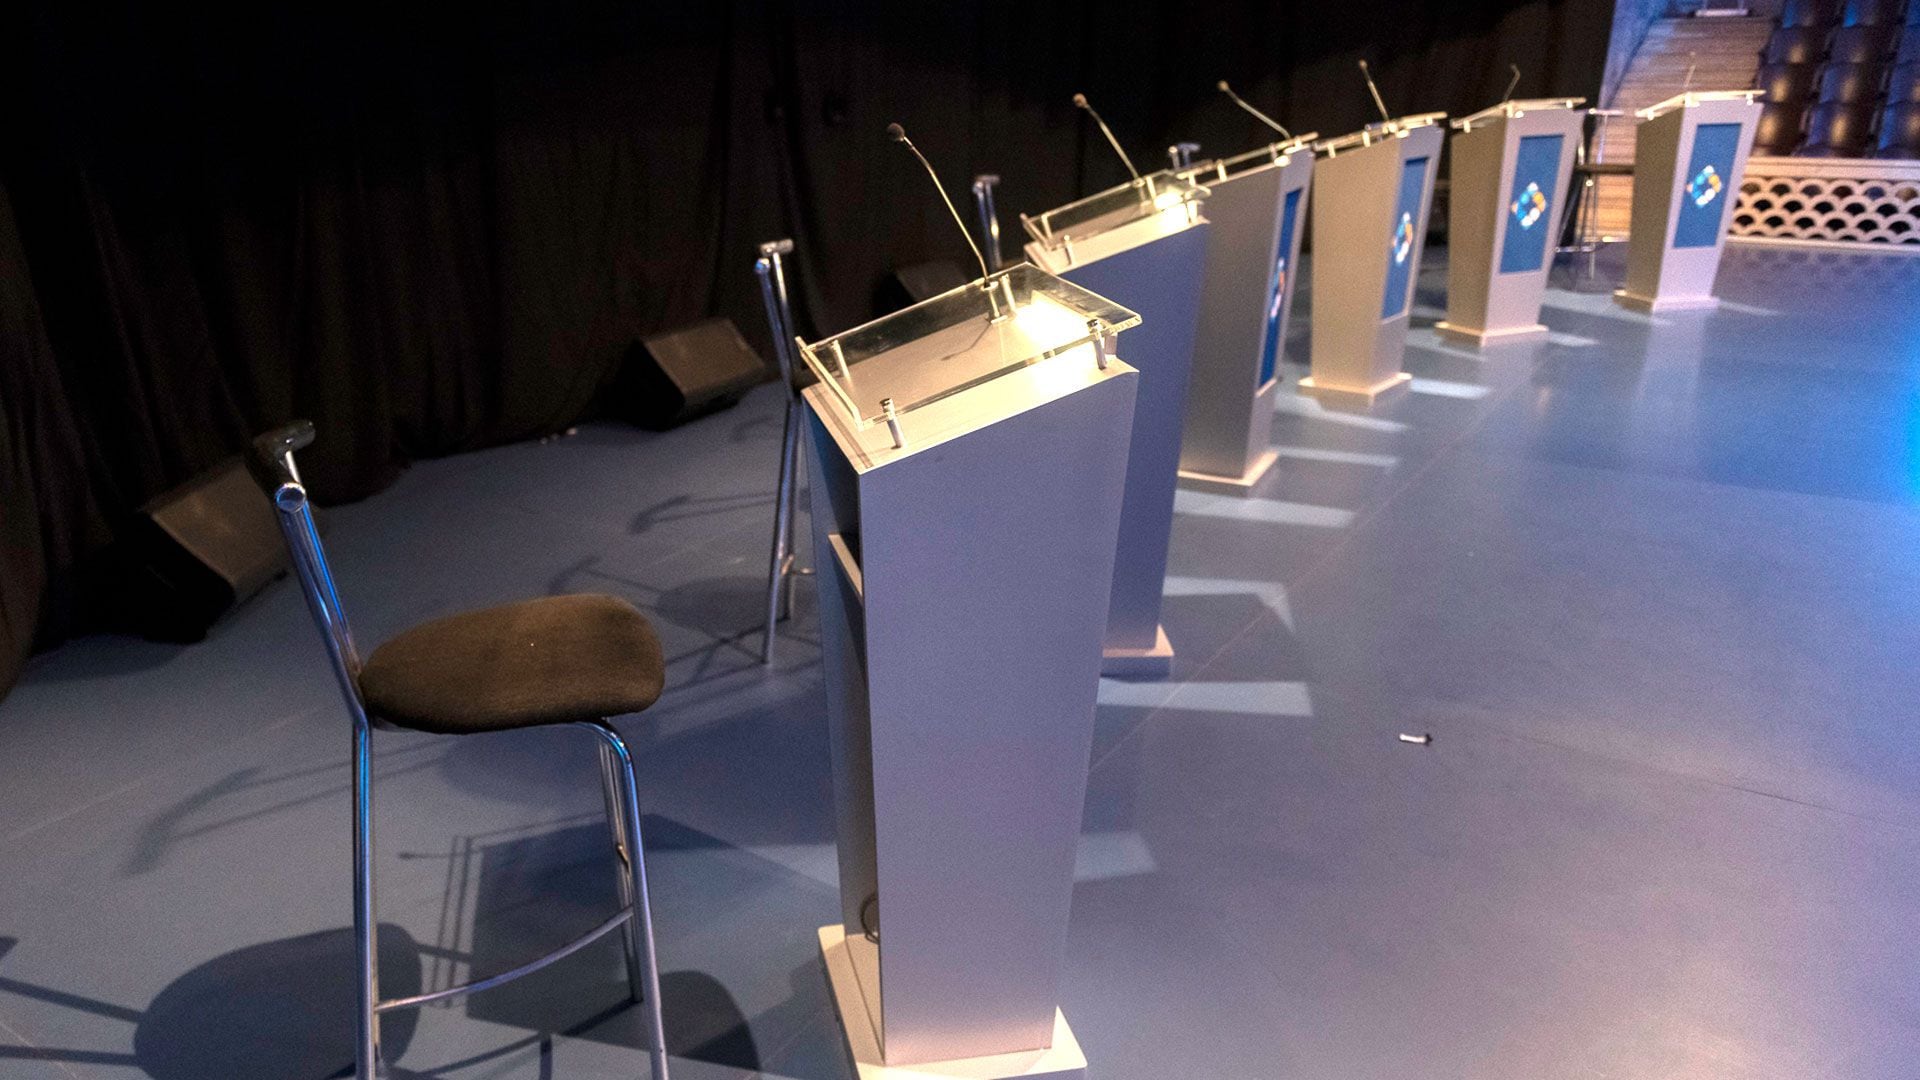 Los candidatos que no participen del debate presidencial recibirán sanciones (Adrián Escándar)